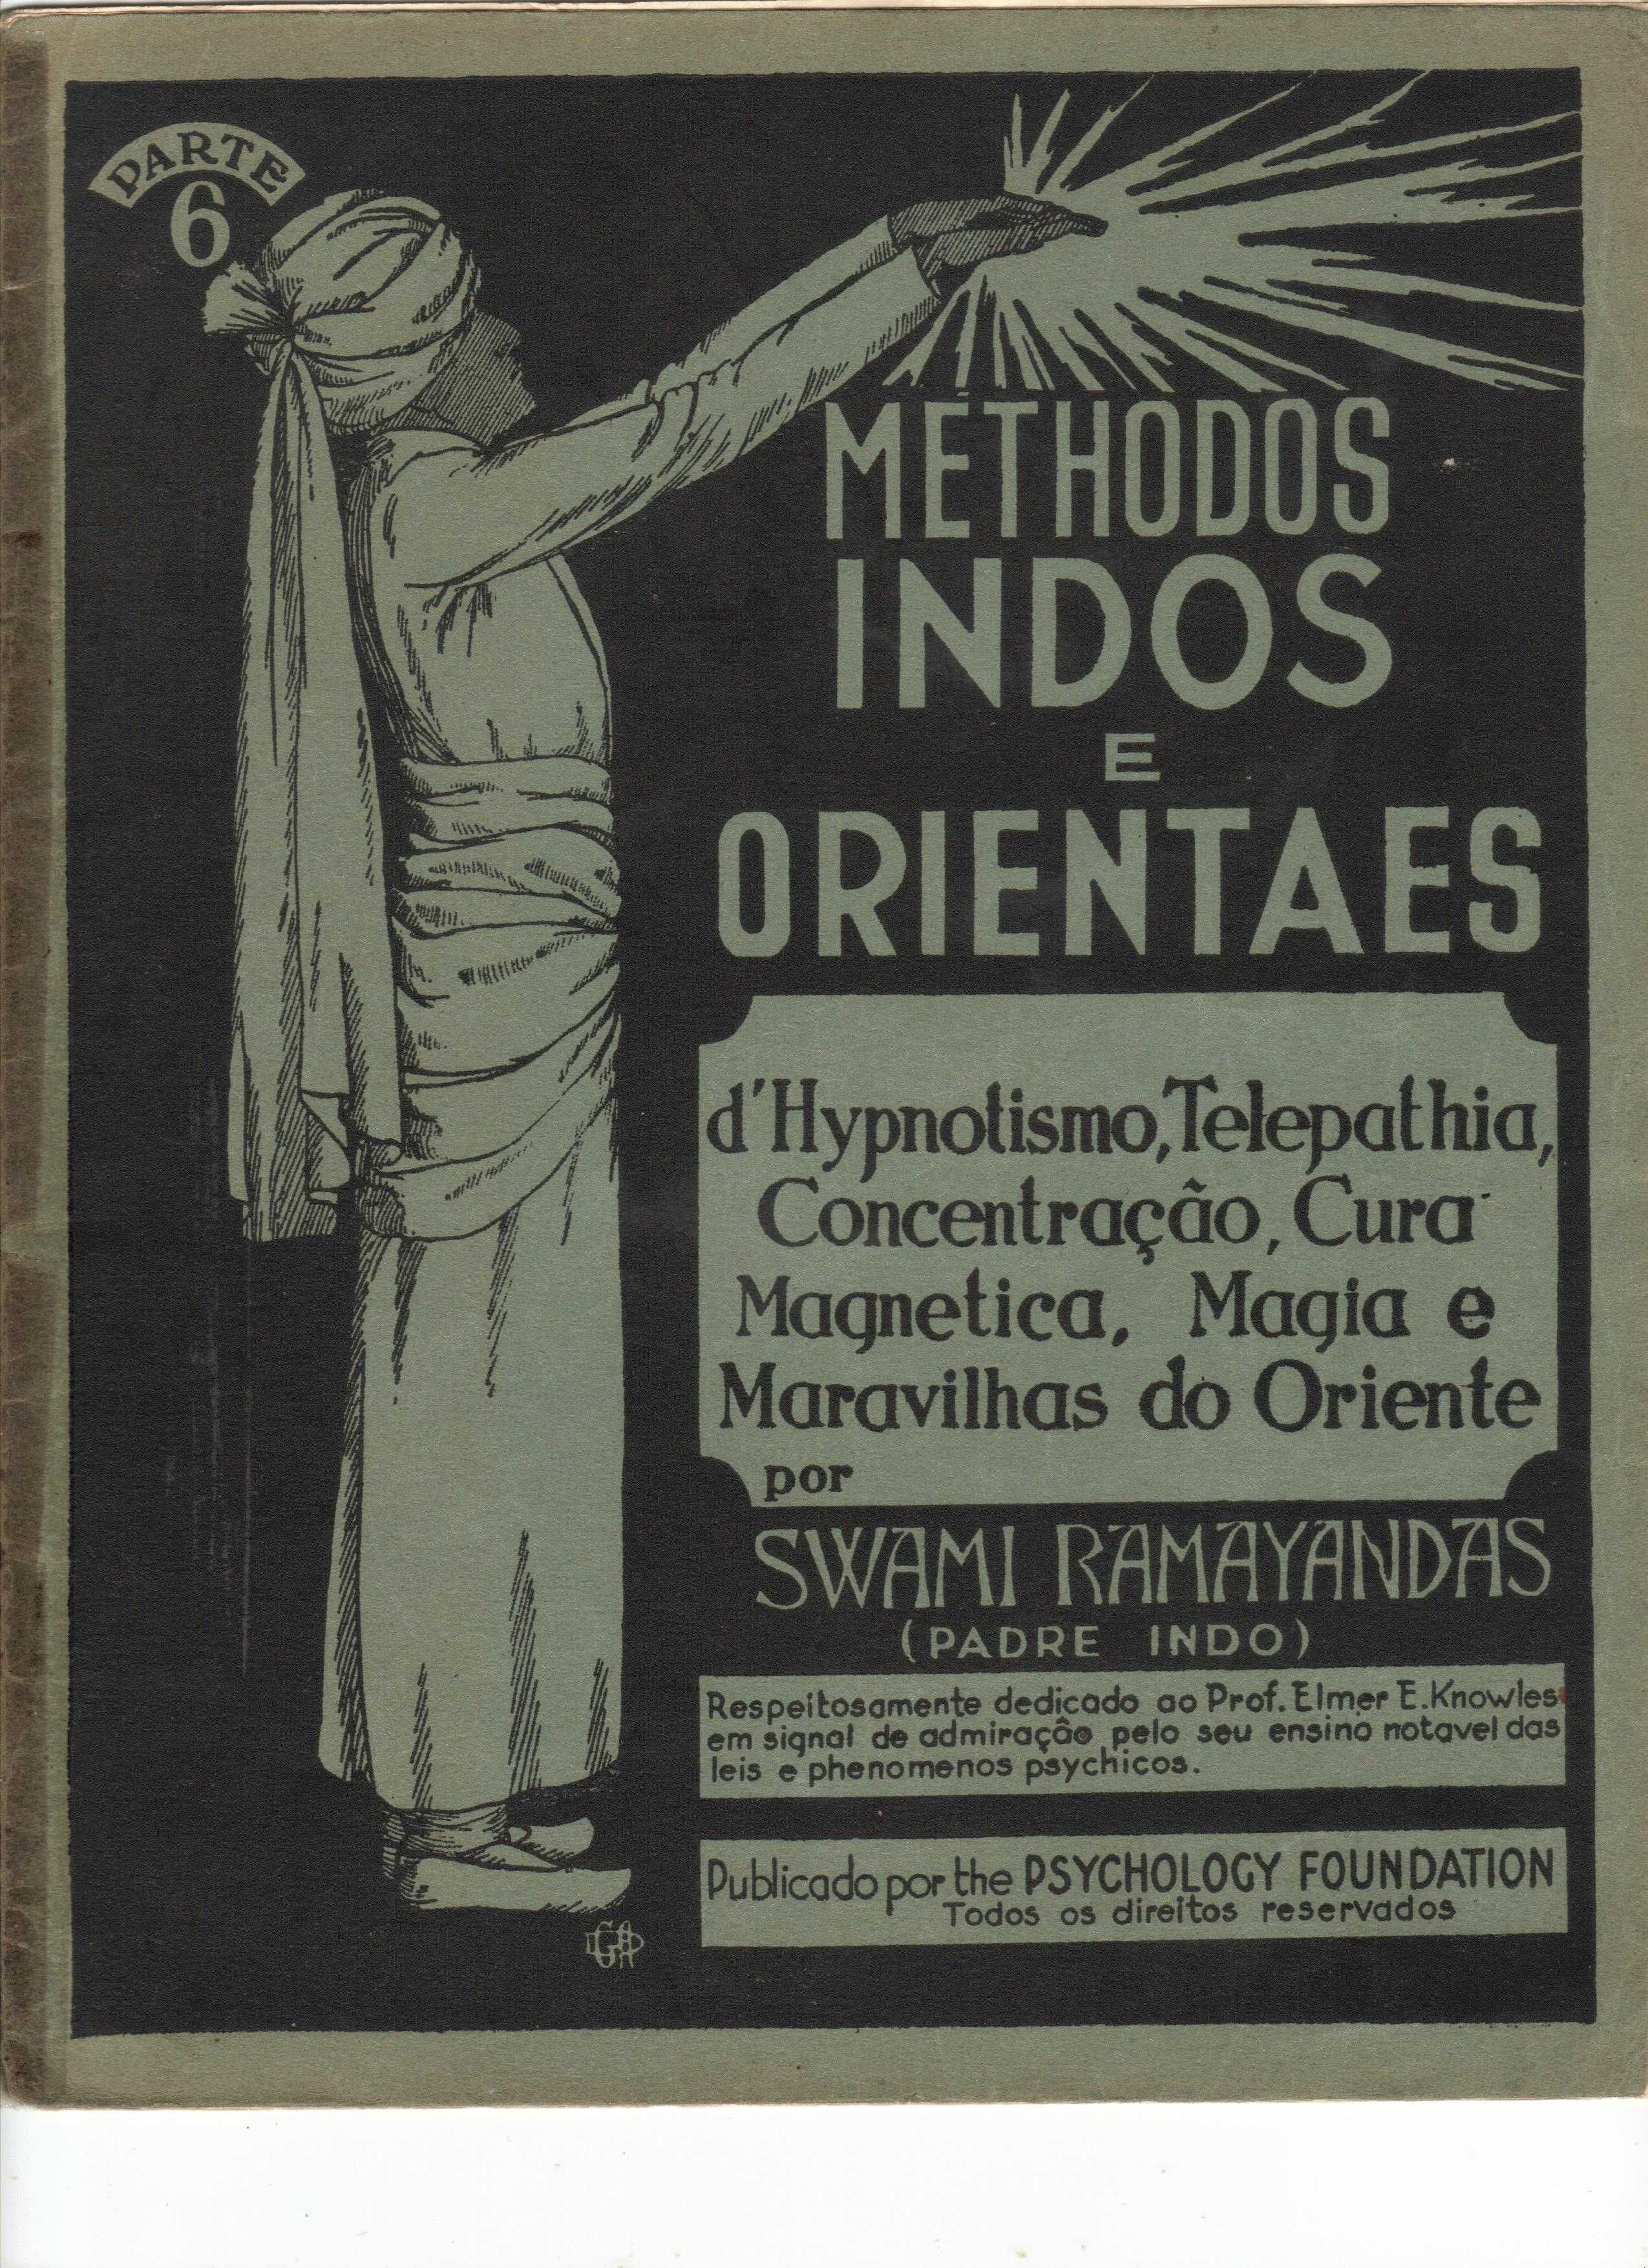 Livro “Methodos Indos e Orientaes” com 95 anos